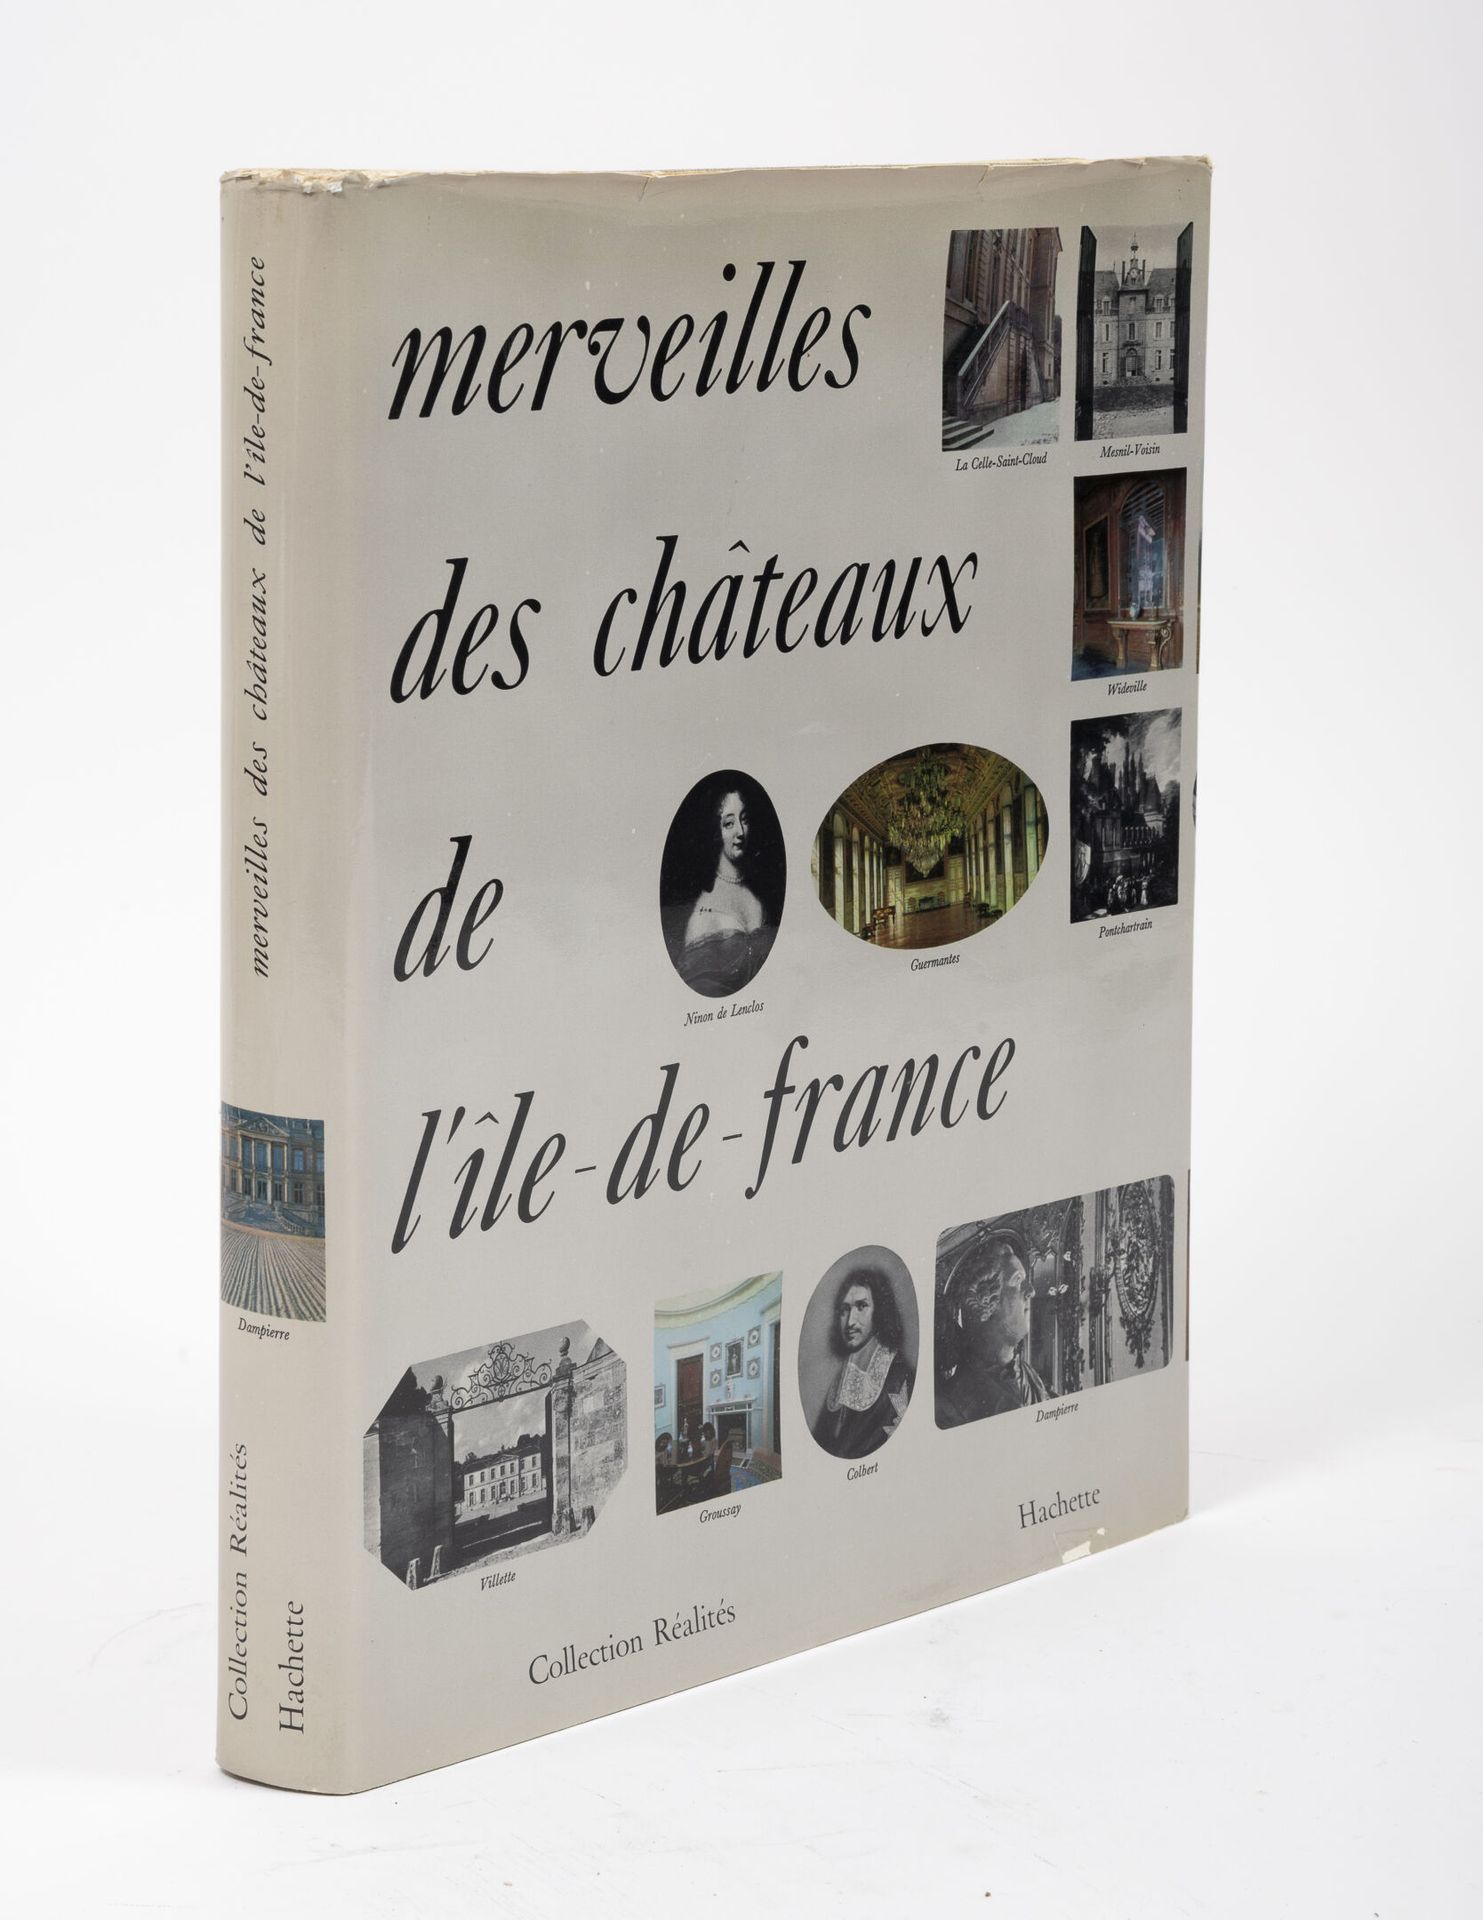 COLLECTIF 法兰西岛的城堡奇观。

Réalités Hachette系列，1963年。

1卷。

未经整理。